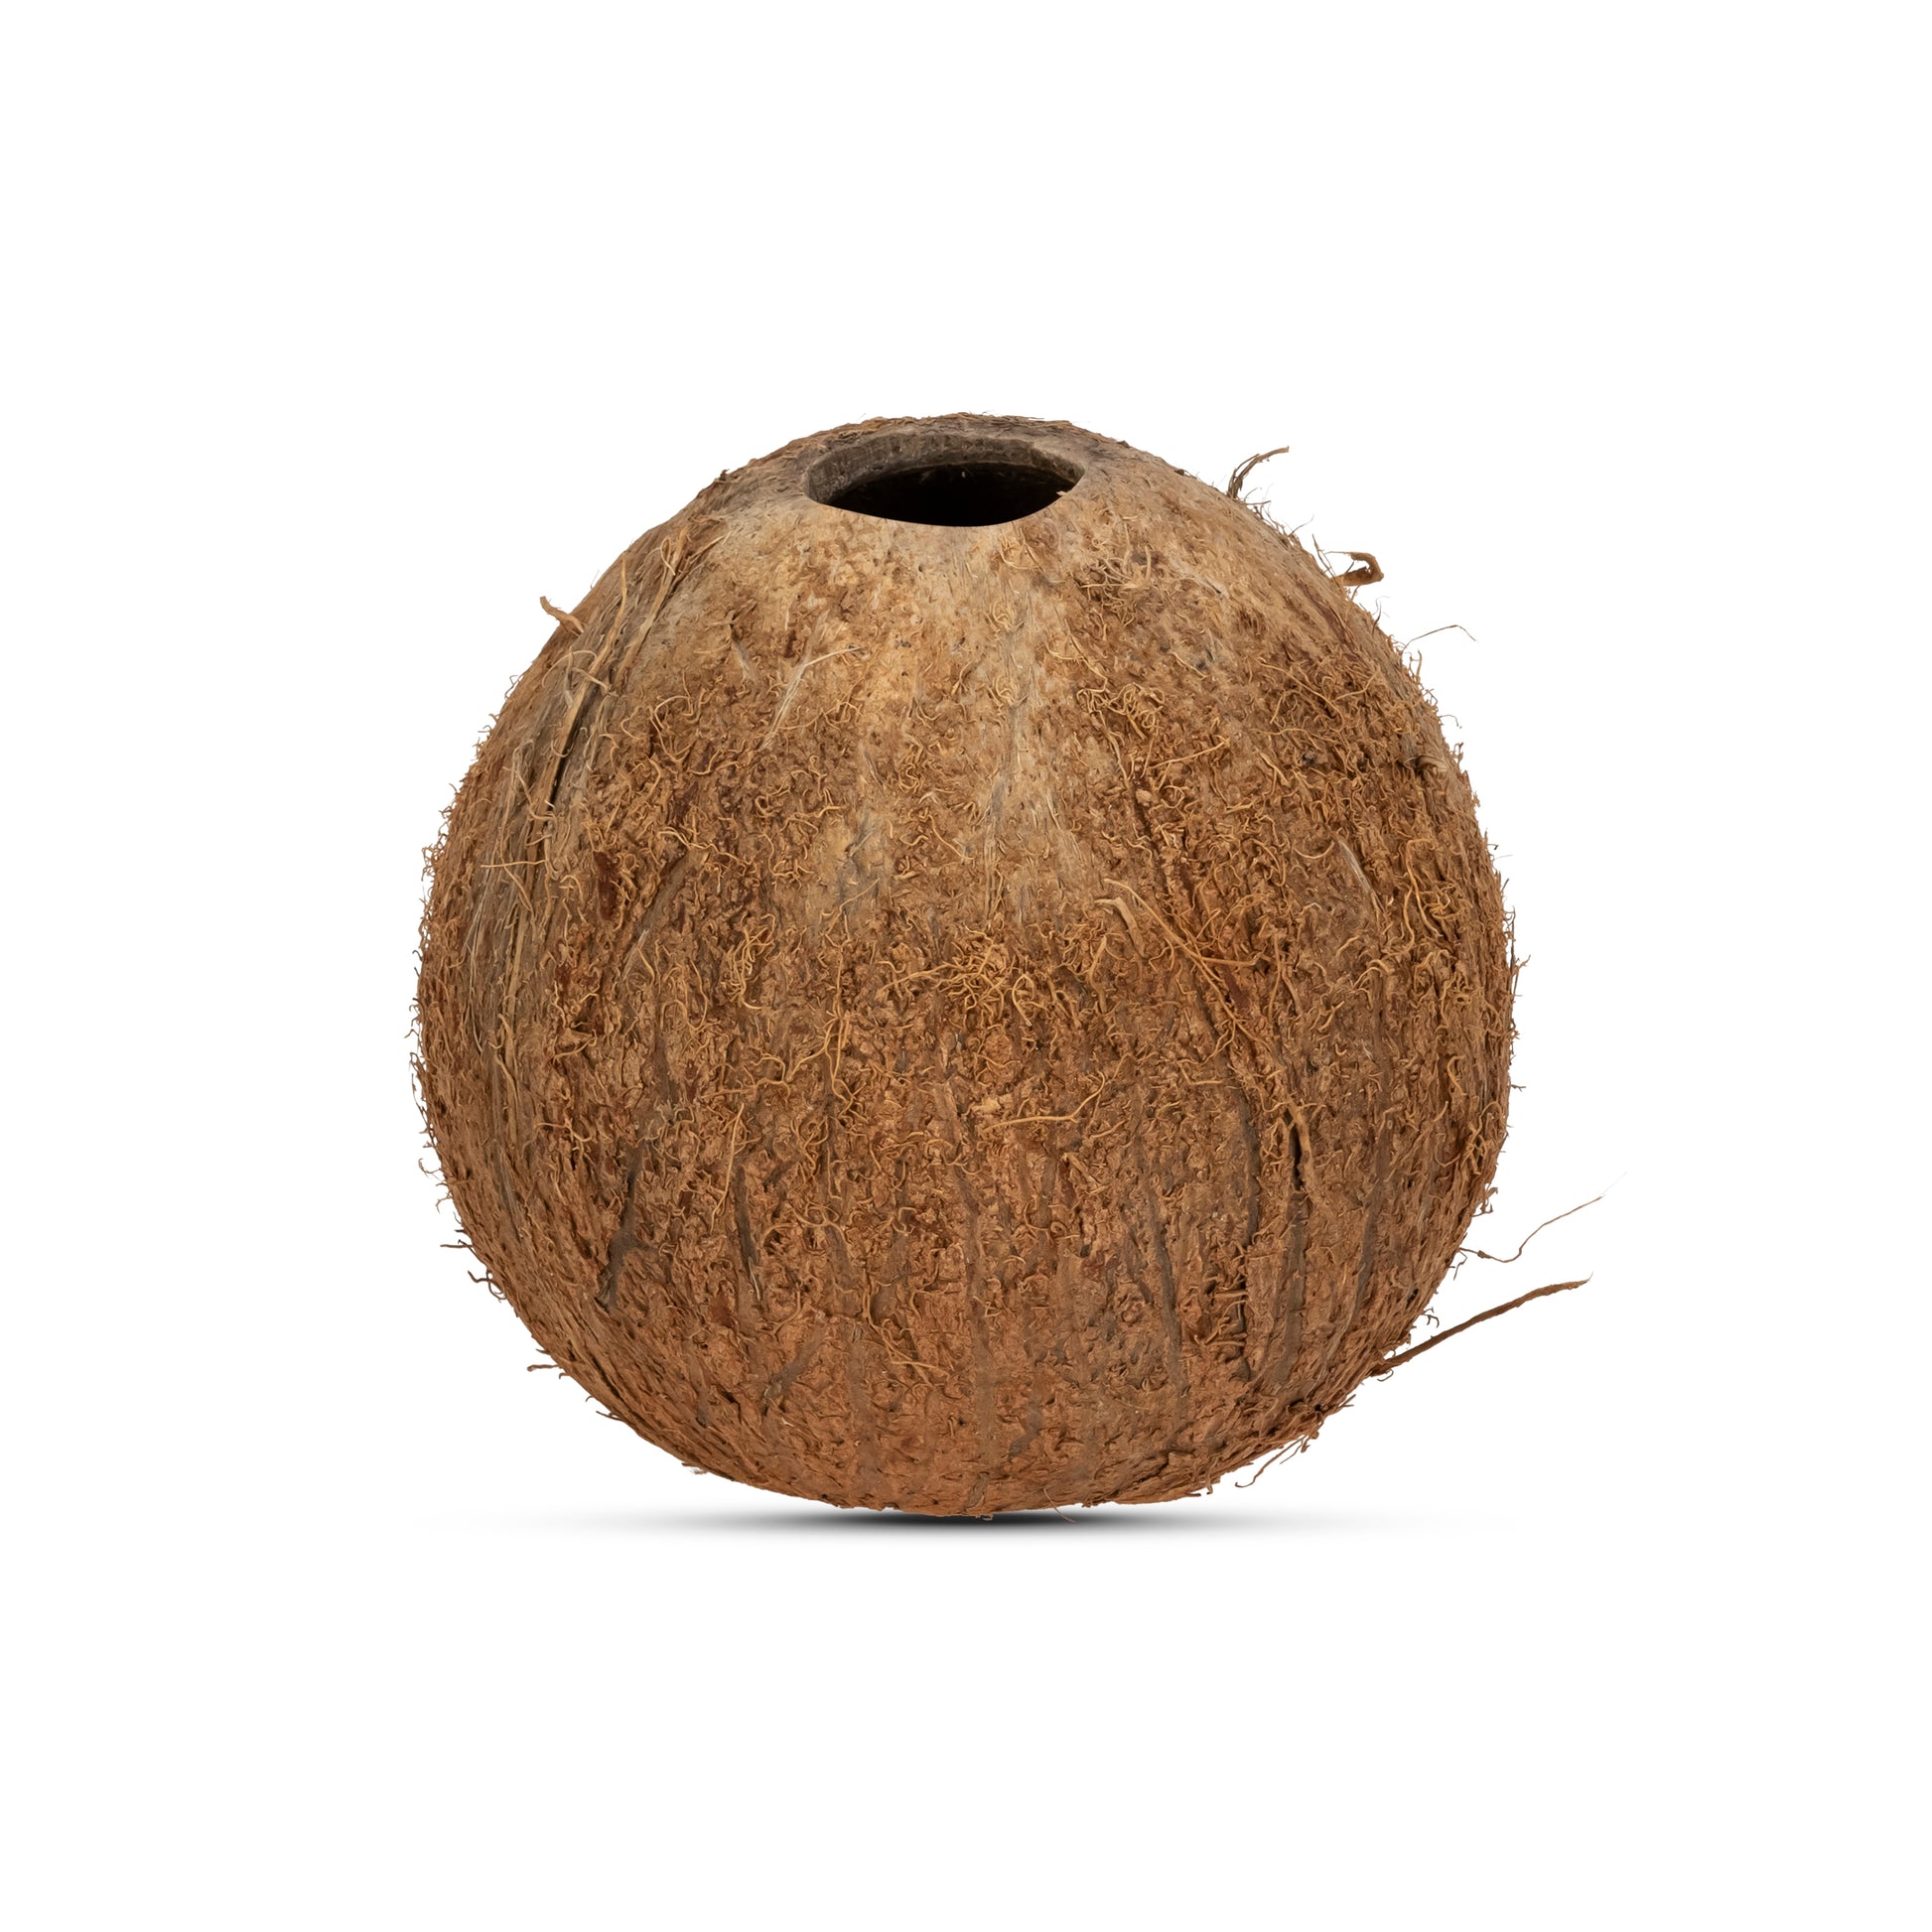  Coconut Shells